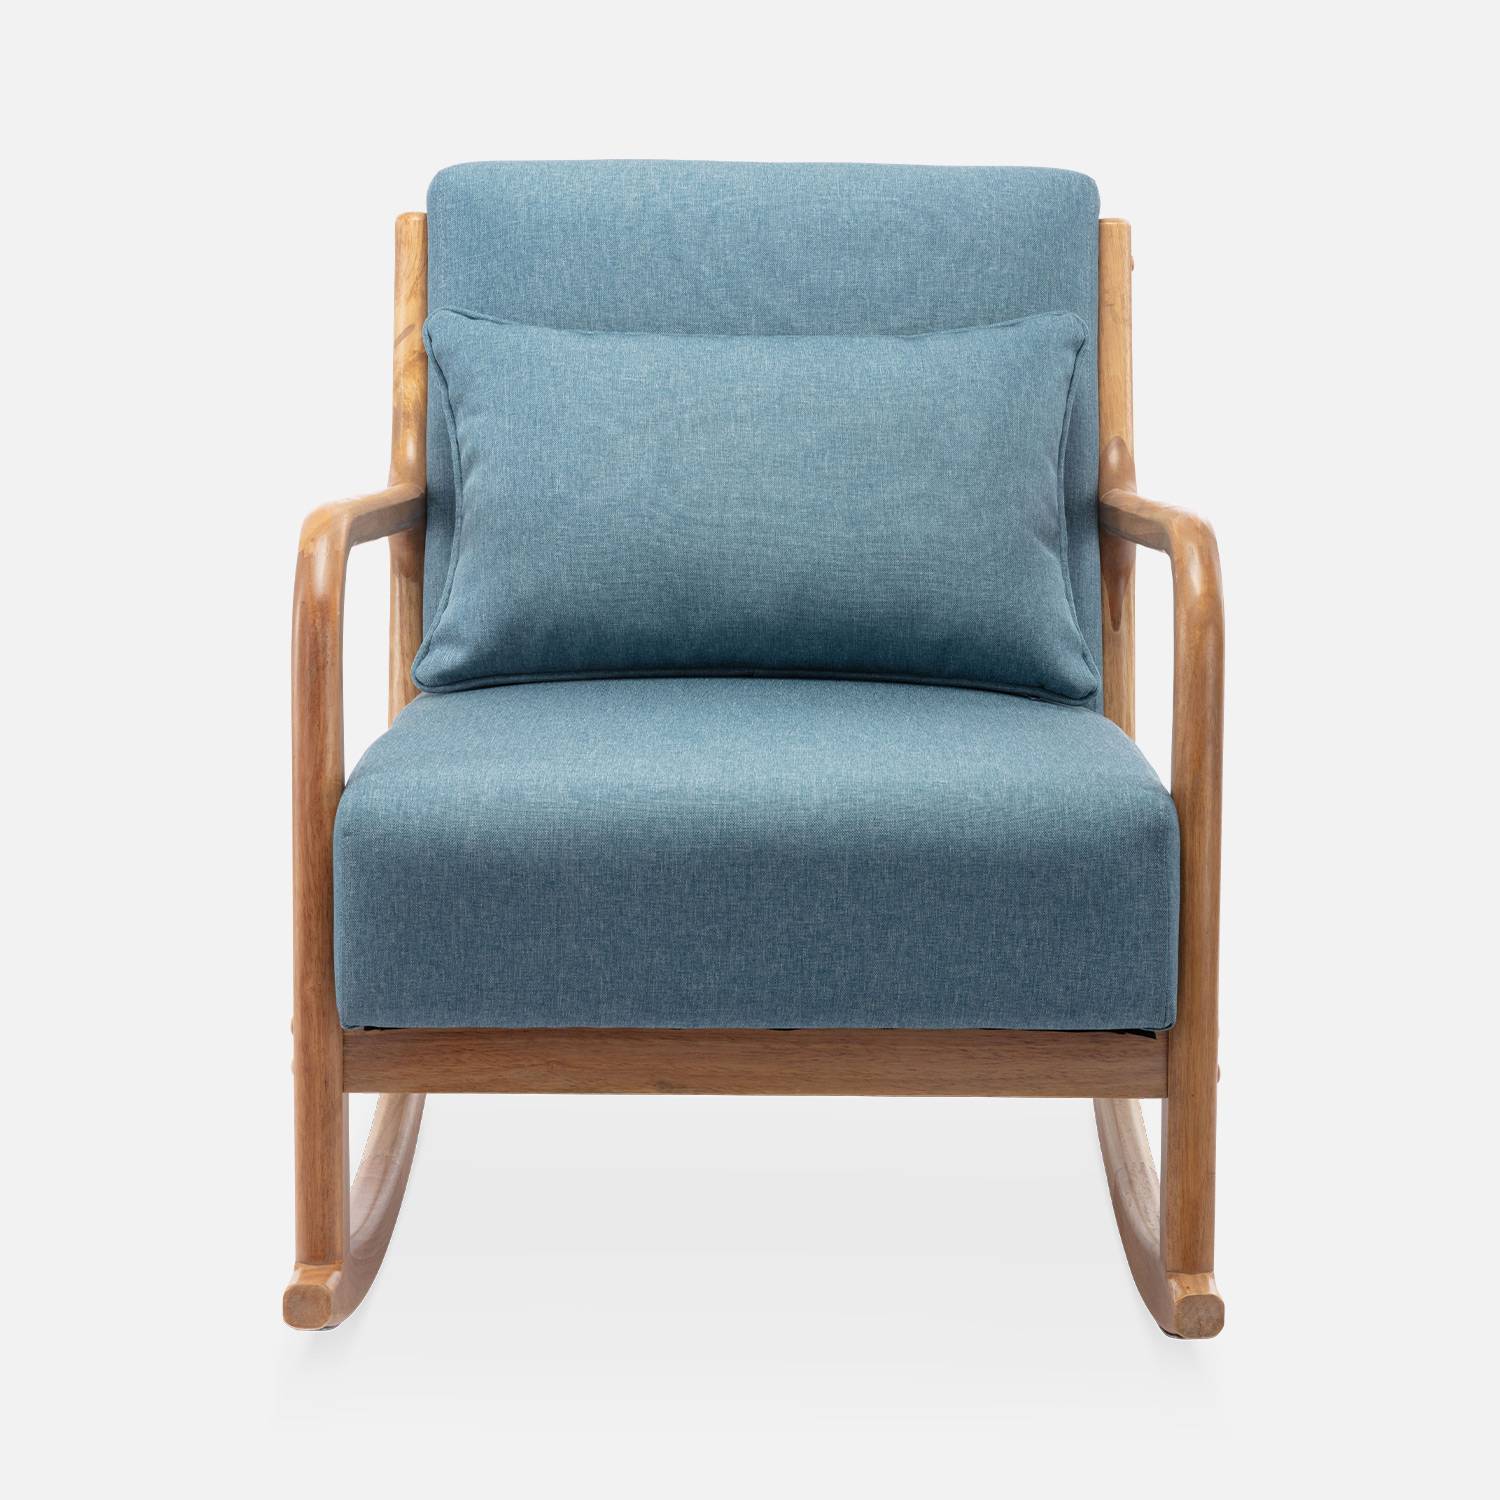 Cadeira de baloiço de design em madeira e tecido, 1 assento, cadeira de baloiço escandinava, azul Photo4